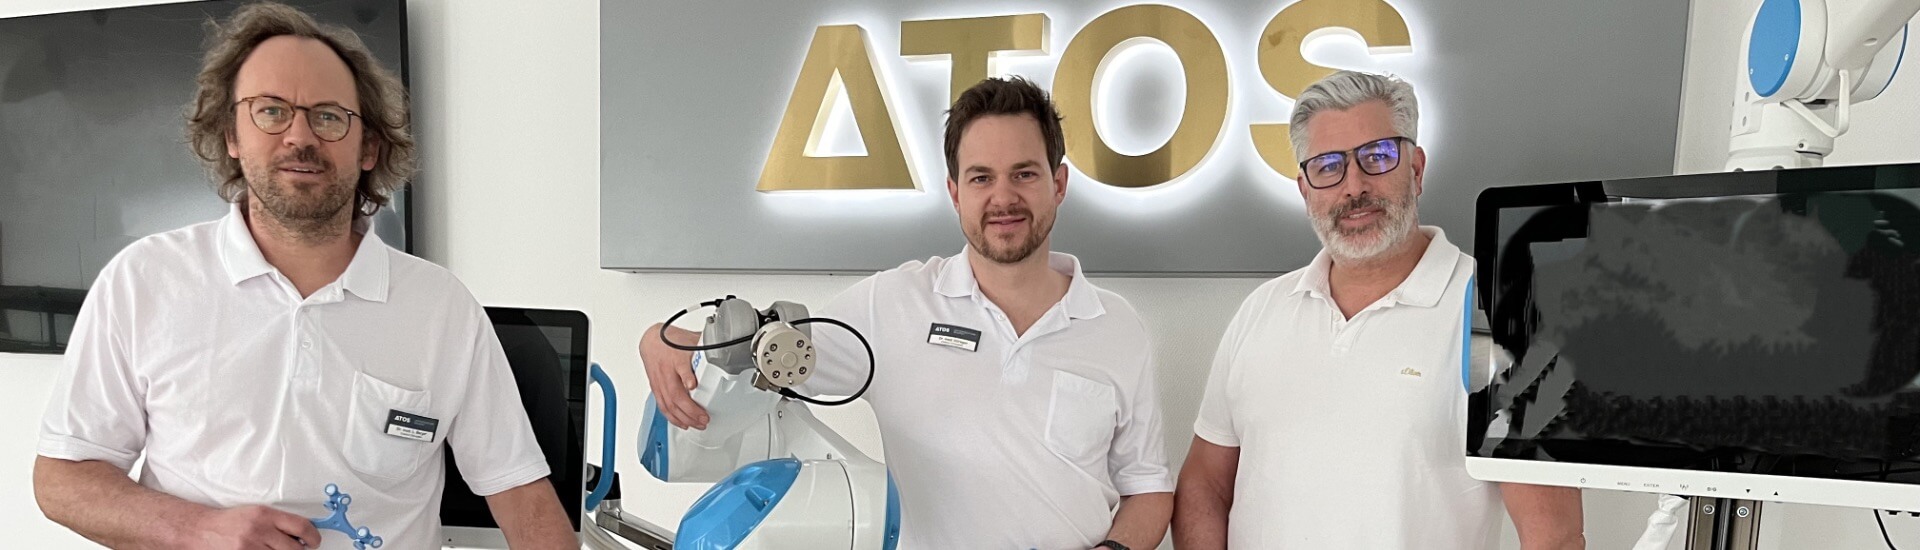 ATOS Klinik Rhein Main Knie OP Roboter